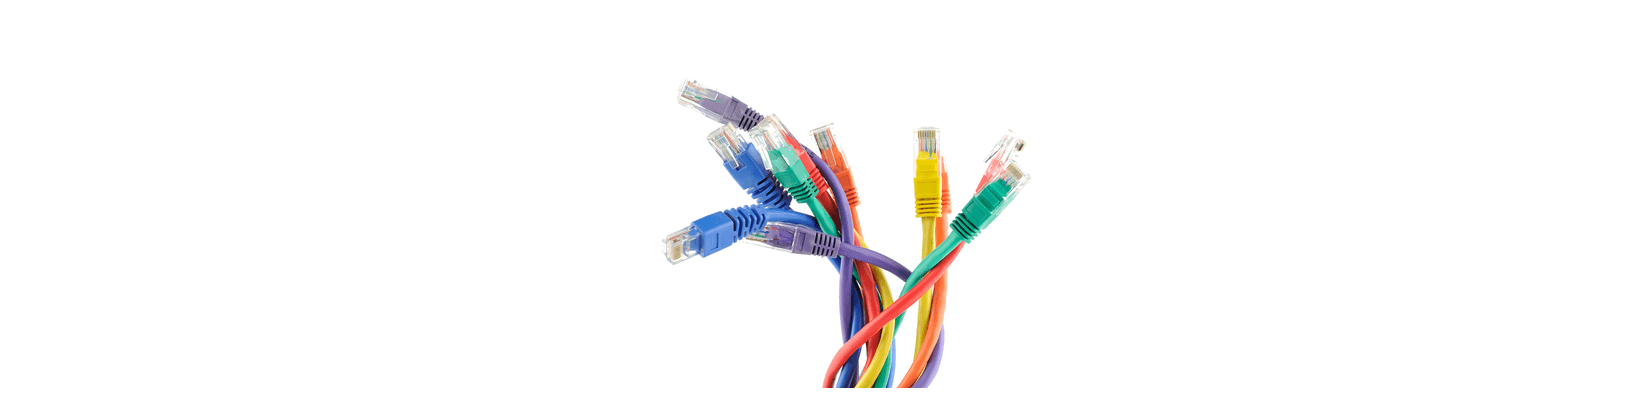 Cables réseau Tunisie, vente cable Ethernet